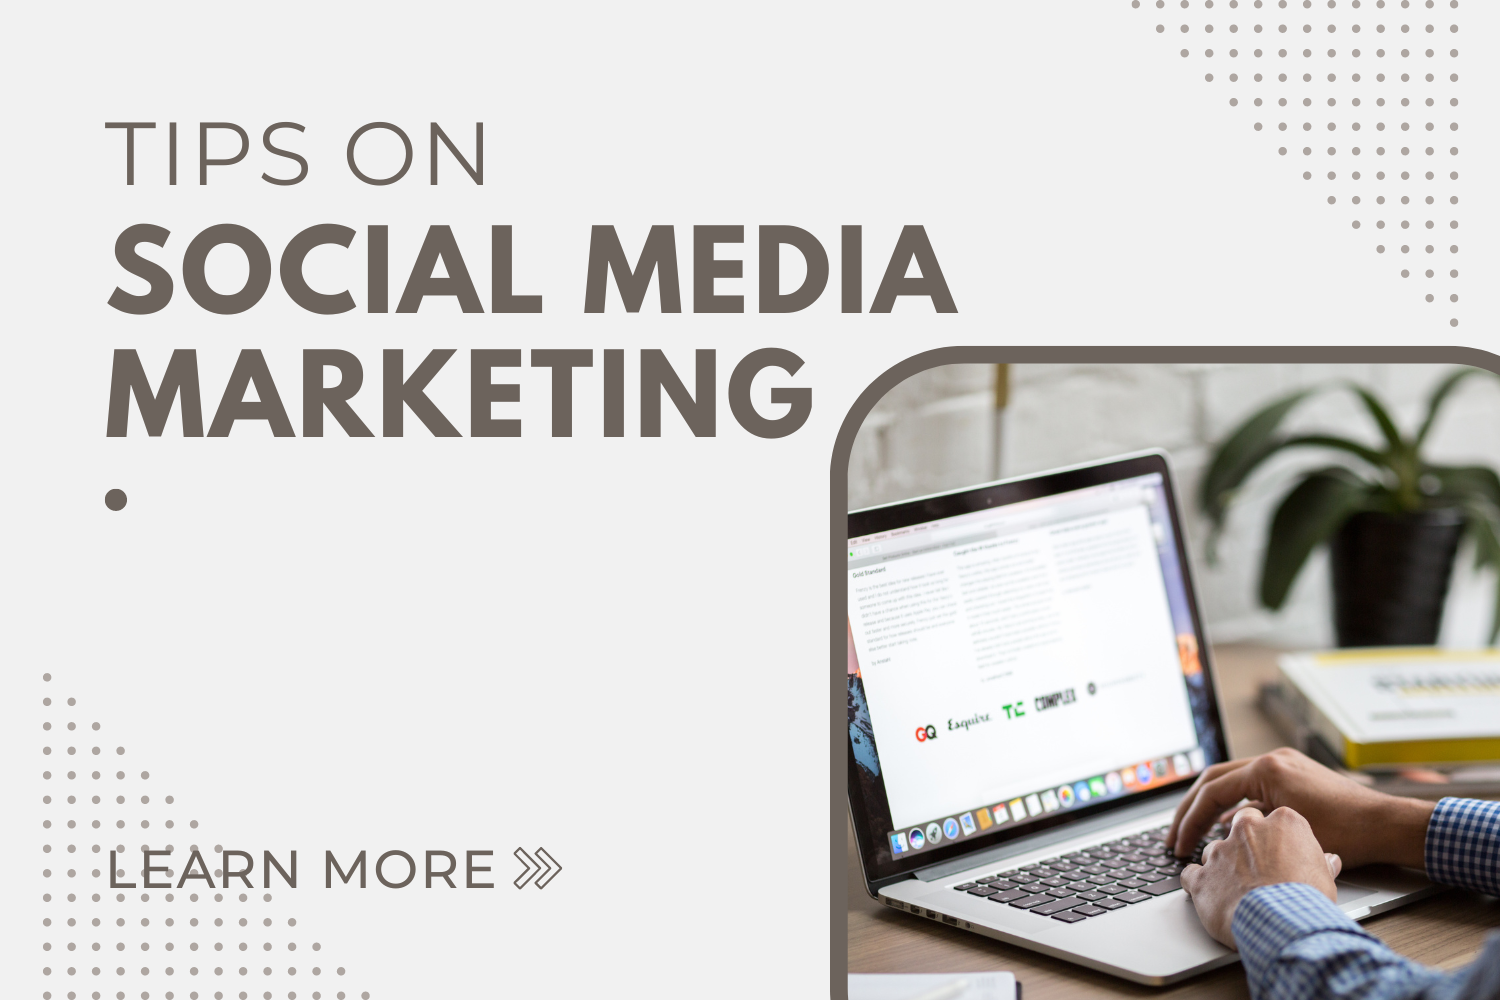 Tips on Social Media Marketing